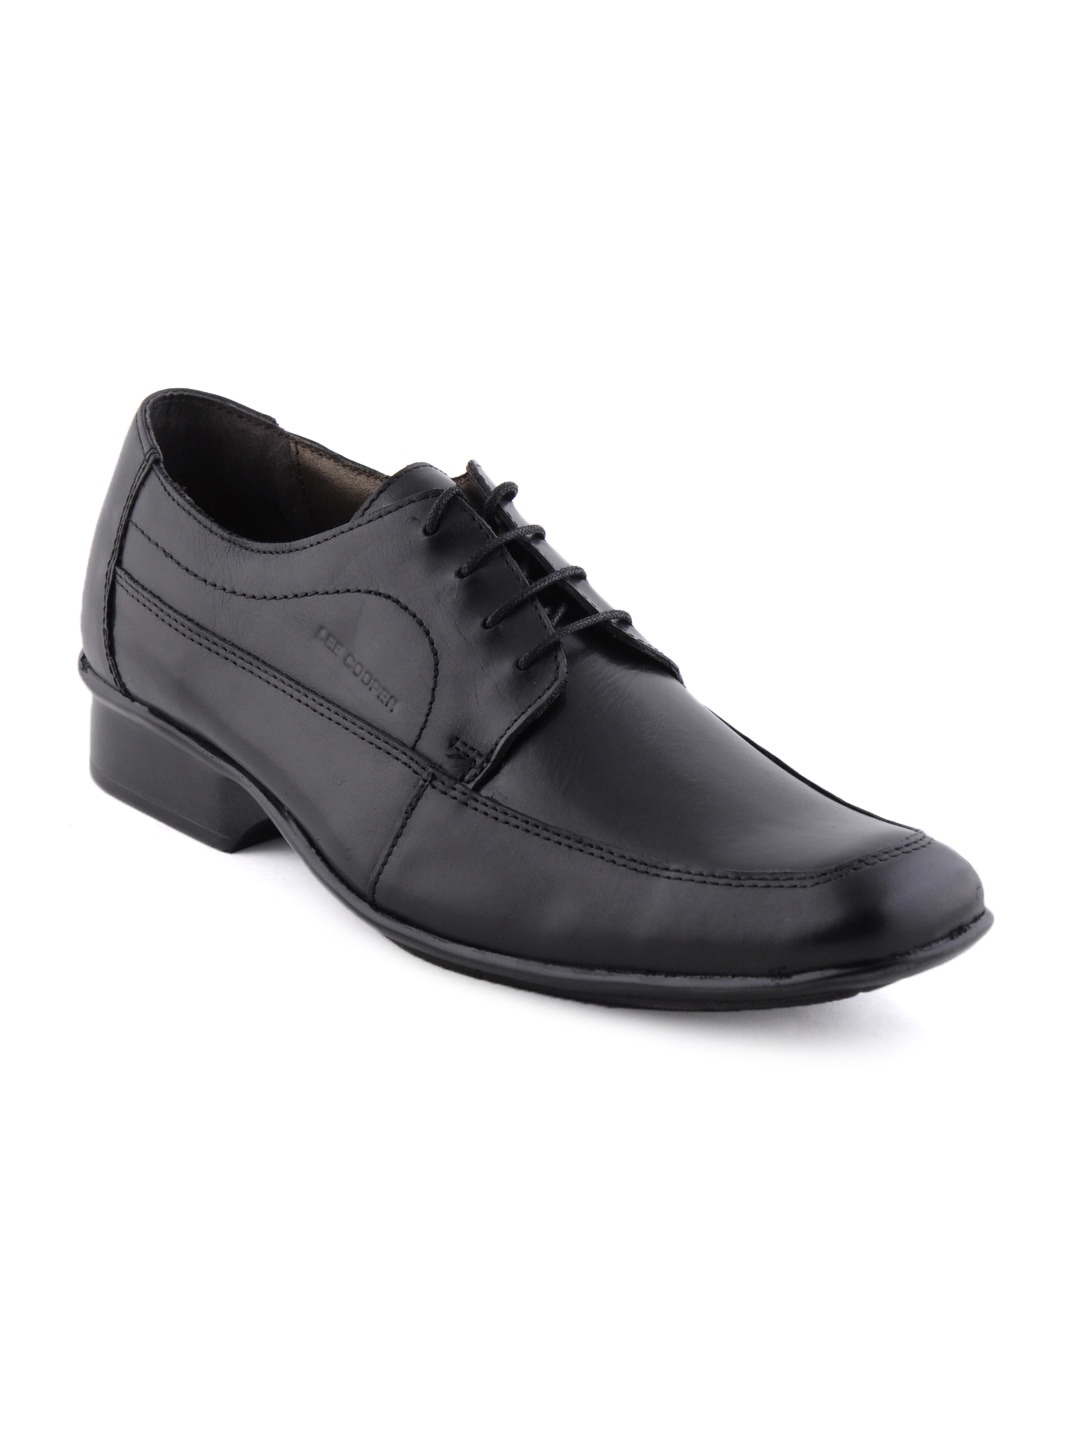 Lee Cooper Men Black Formal Shoes